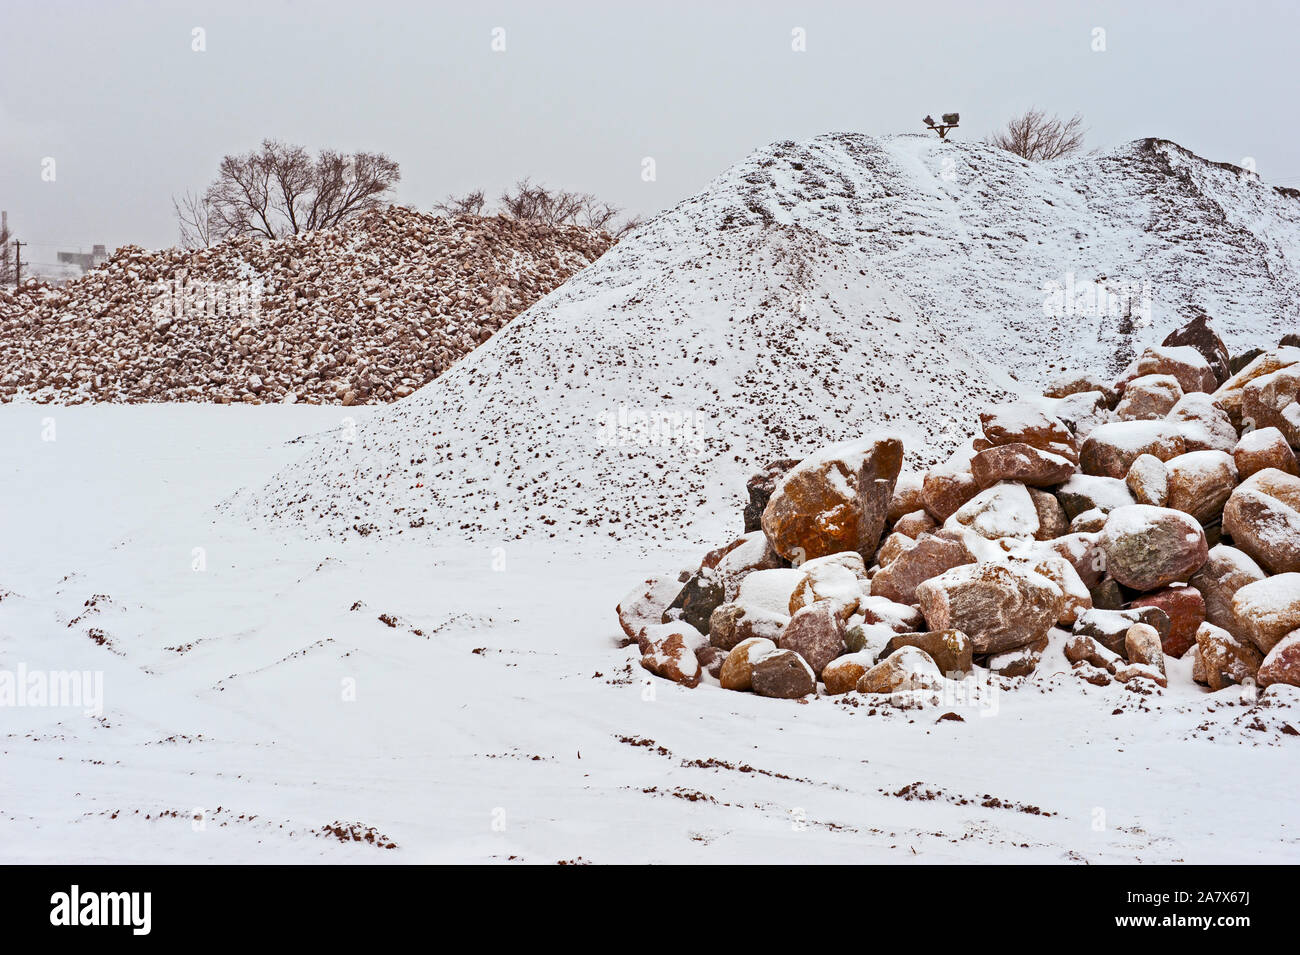 Felsen- und Steinhaufen bei einer örtlichen Straßenbaugesellschaft im Winter. Ludington, Michigan, USA. Stockfoto